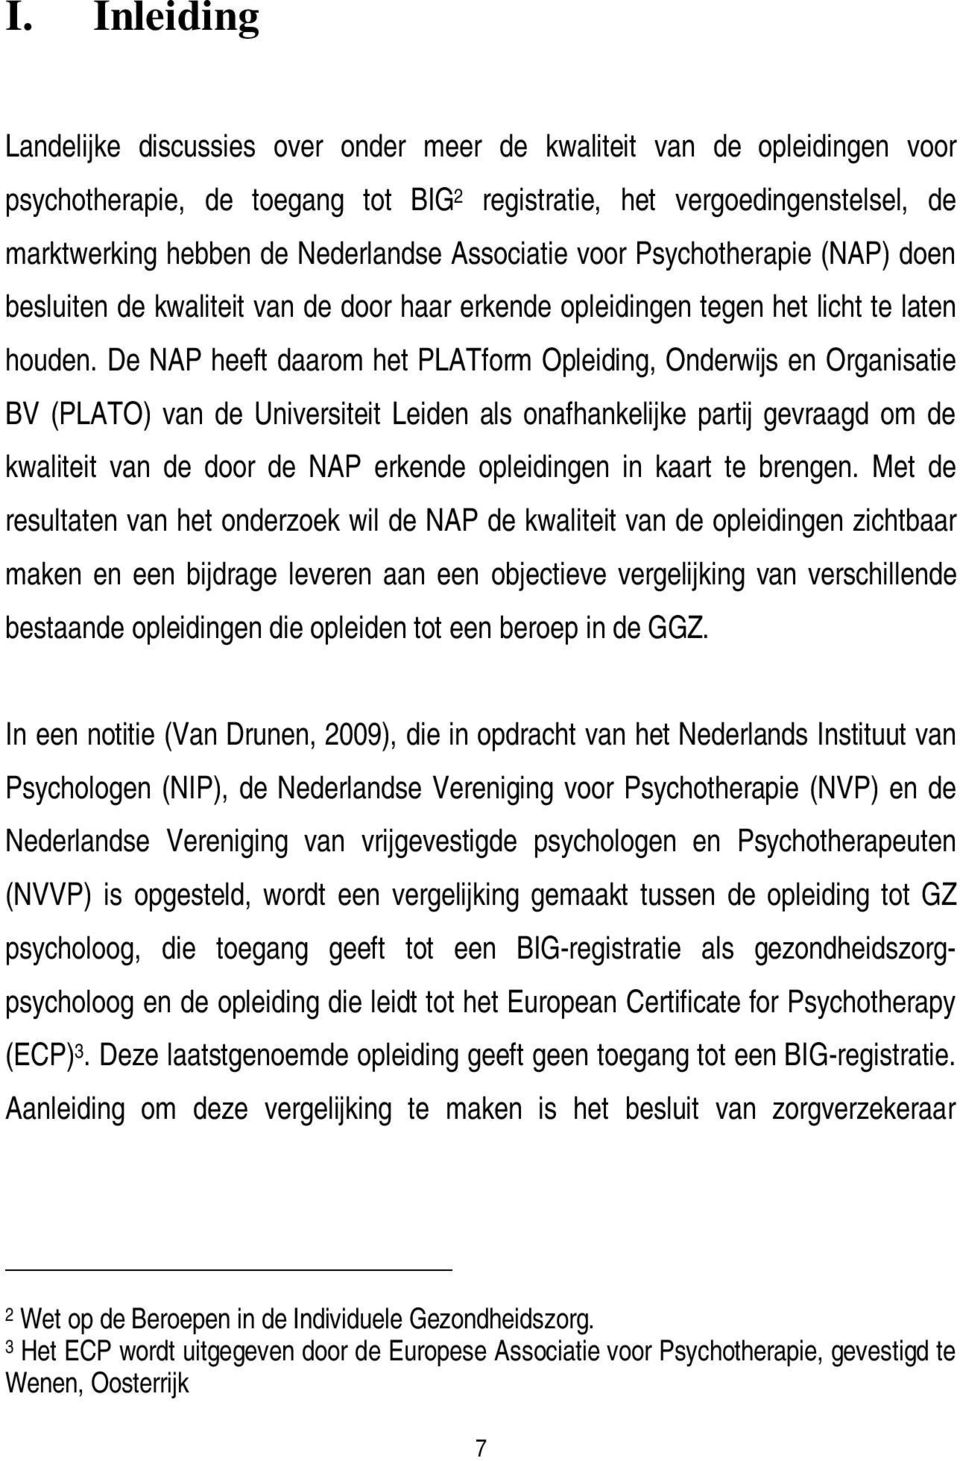 De NAP heeft daarom het PLATform Opleiding, Onderwijs en Organisatie BV (PLATO) van de Universiteit Leiden als onafhankelijke partij gevraagd om de kwaliteit van de door de NAP erkende opleidingen in